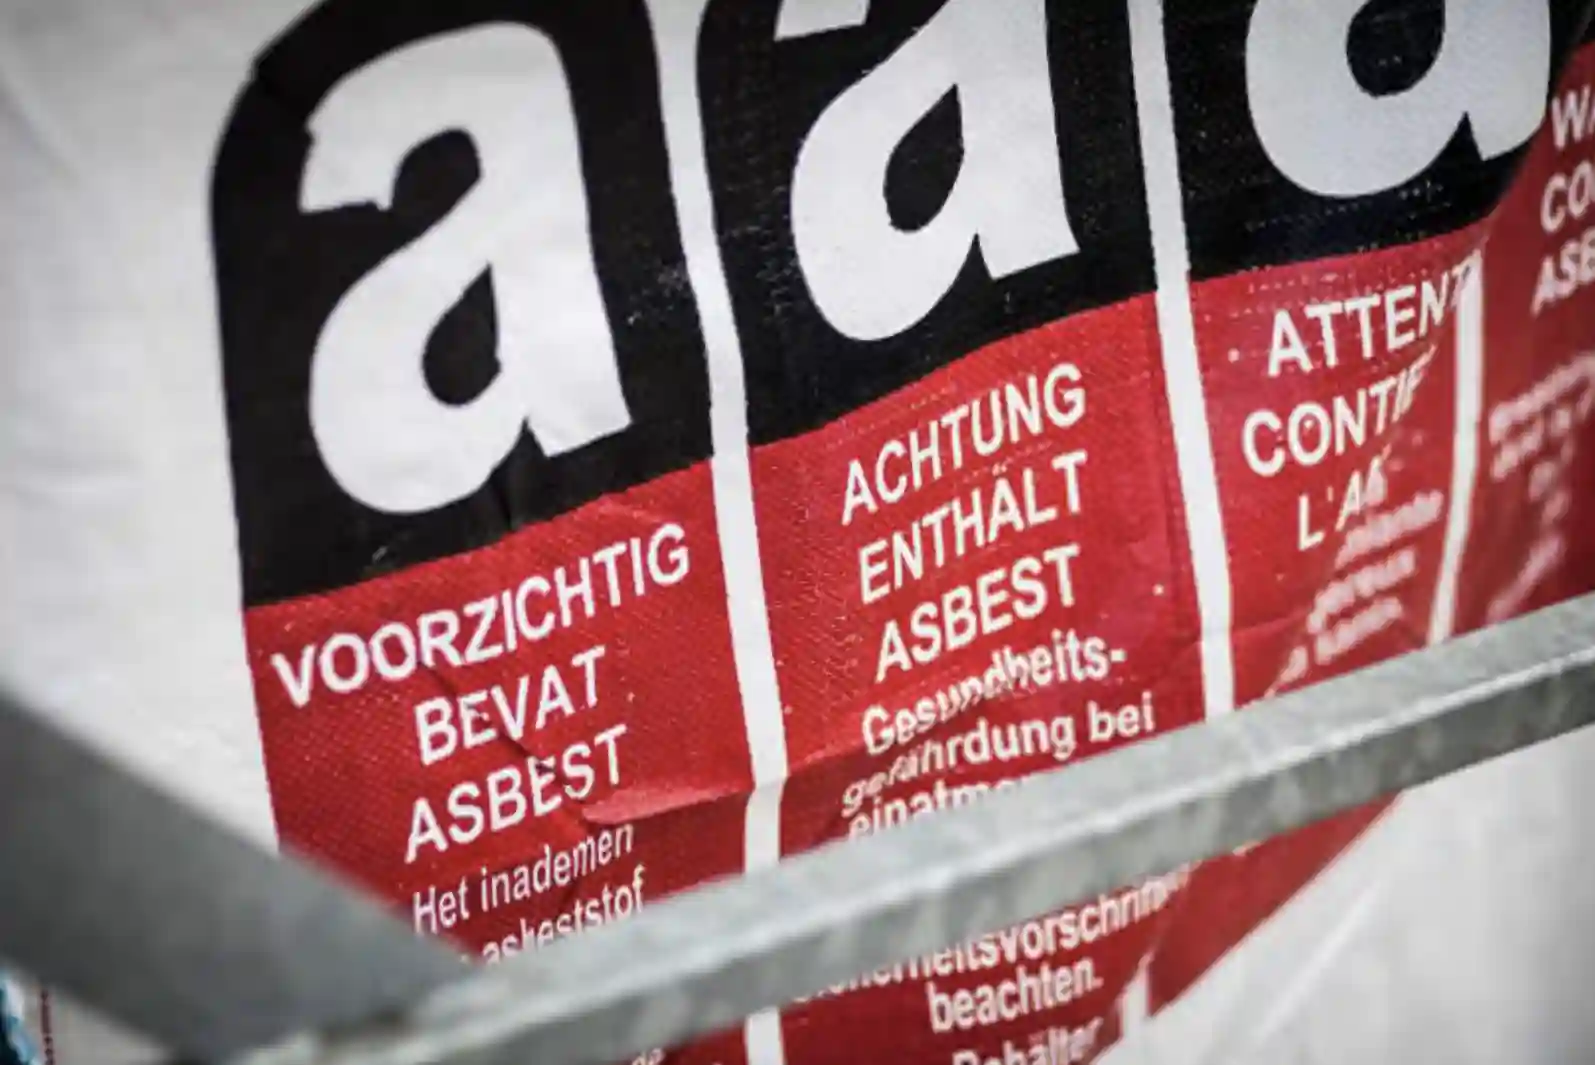 Asbest Verwijdering - Professionele en veilige asbestverwijdering voor uw gebouwen: EIHPOS GROUP Aannemer Mechelen